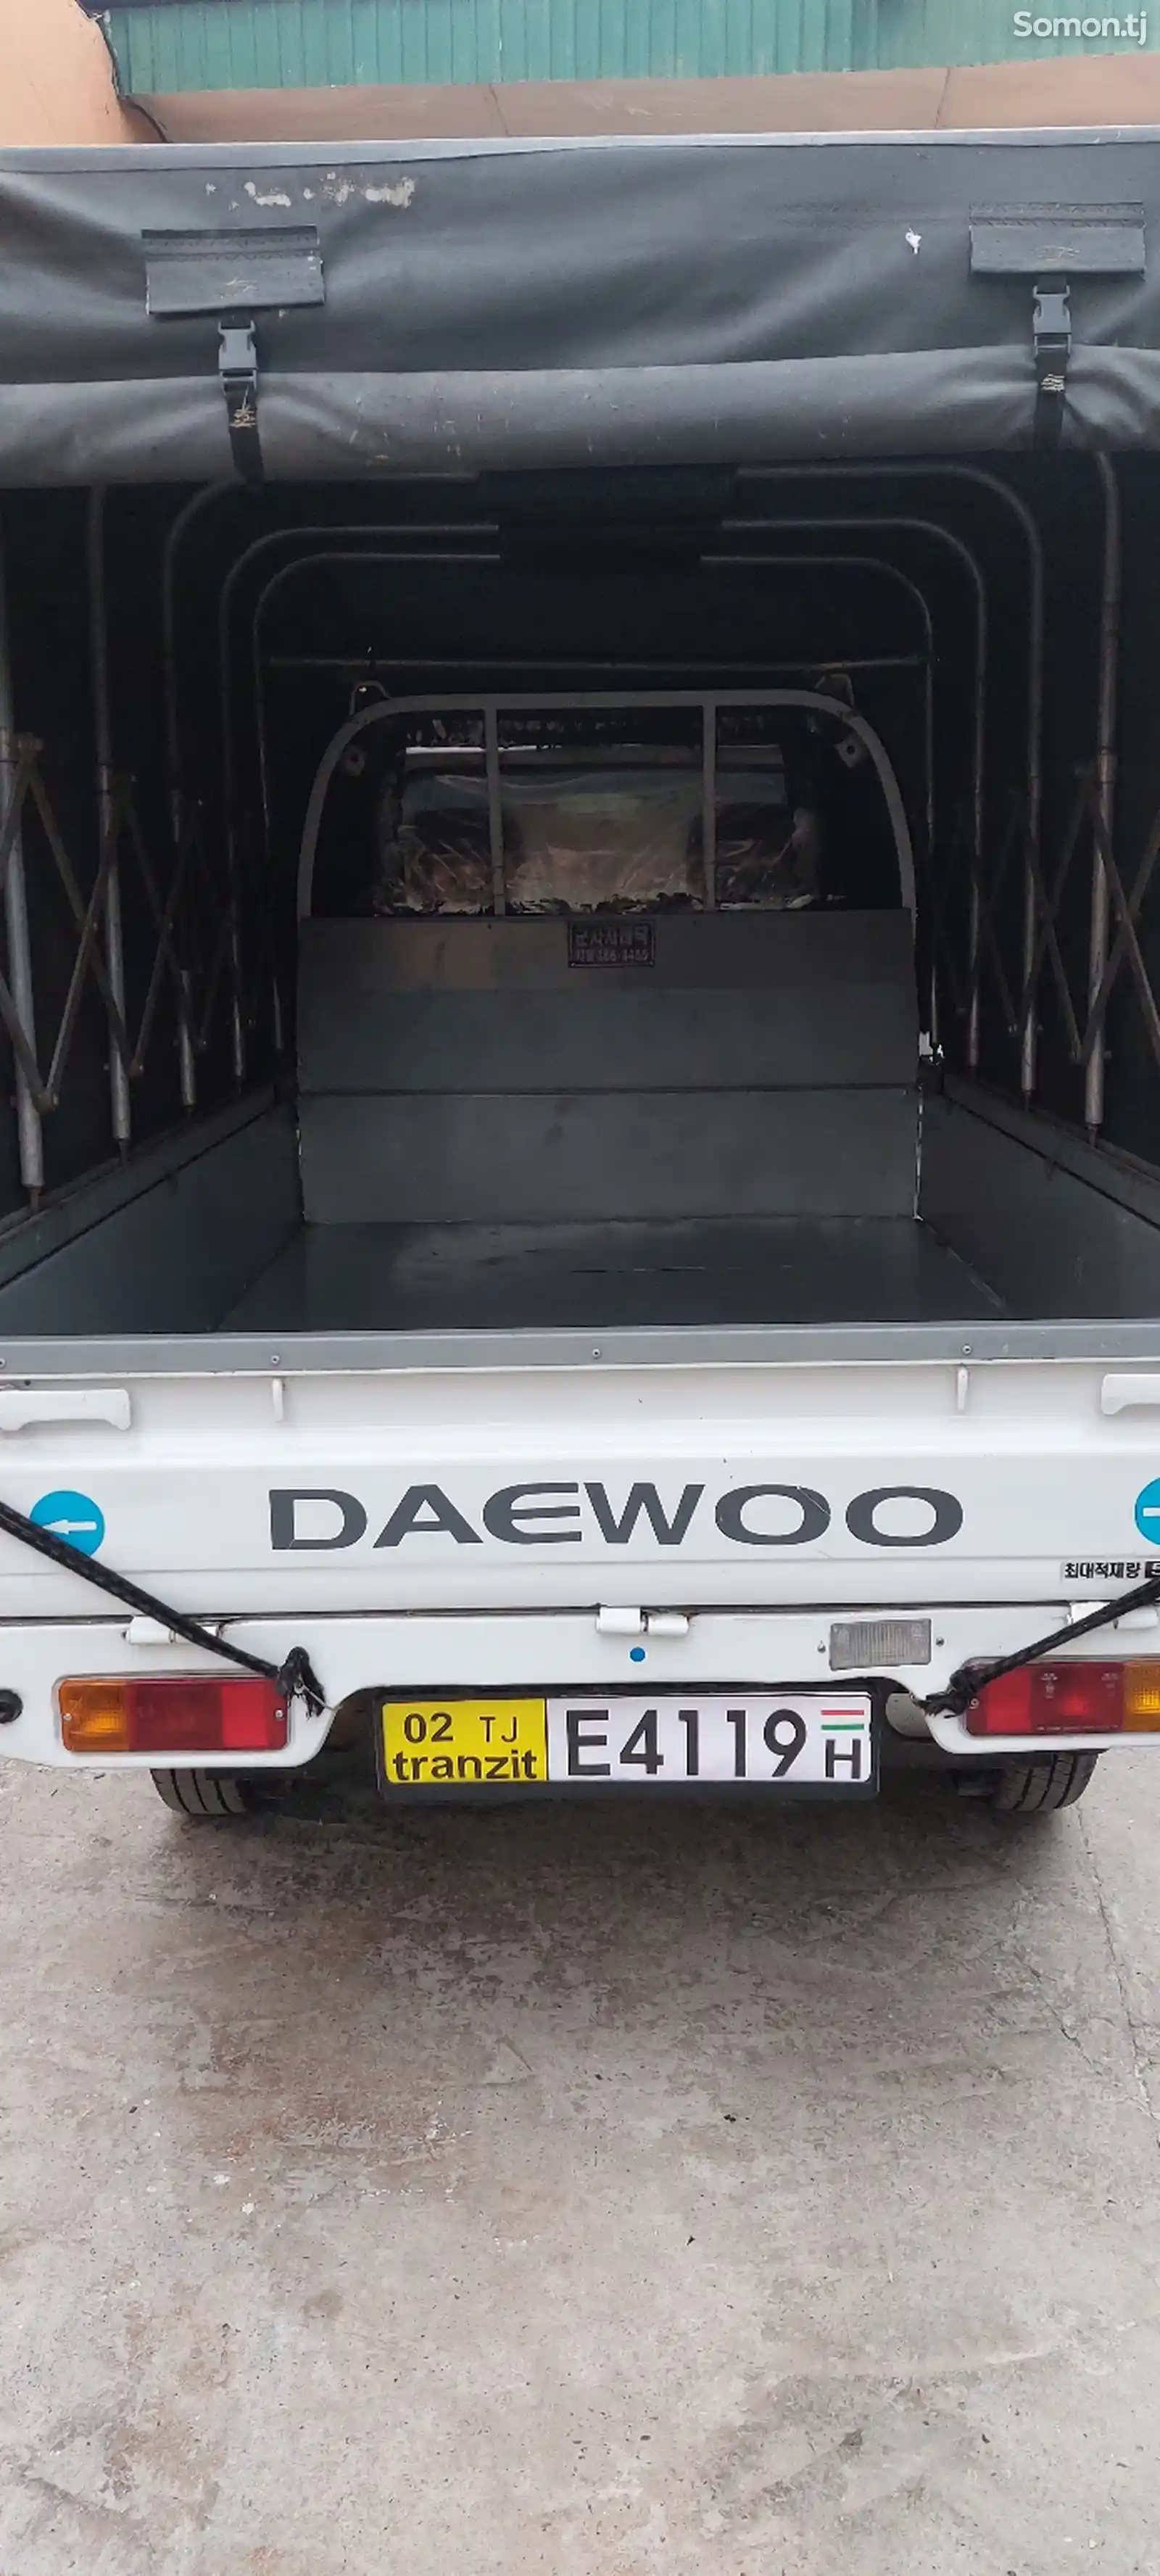 Бортовой автомобиль Daewoo Labo, 2015-2